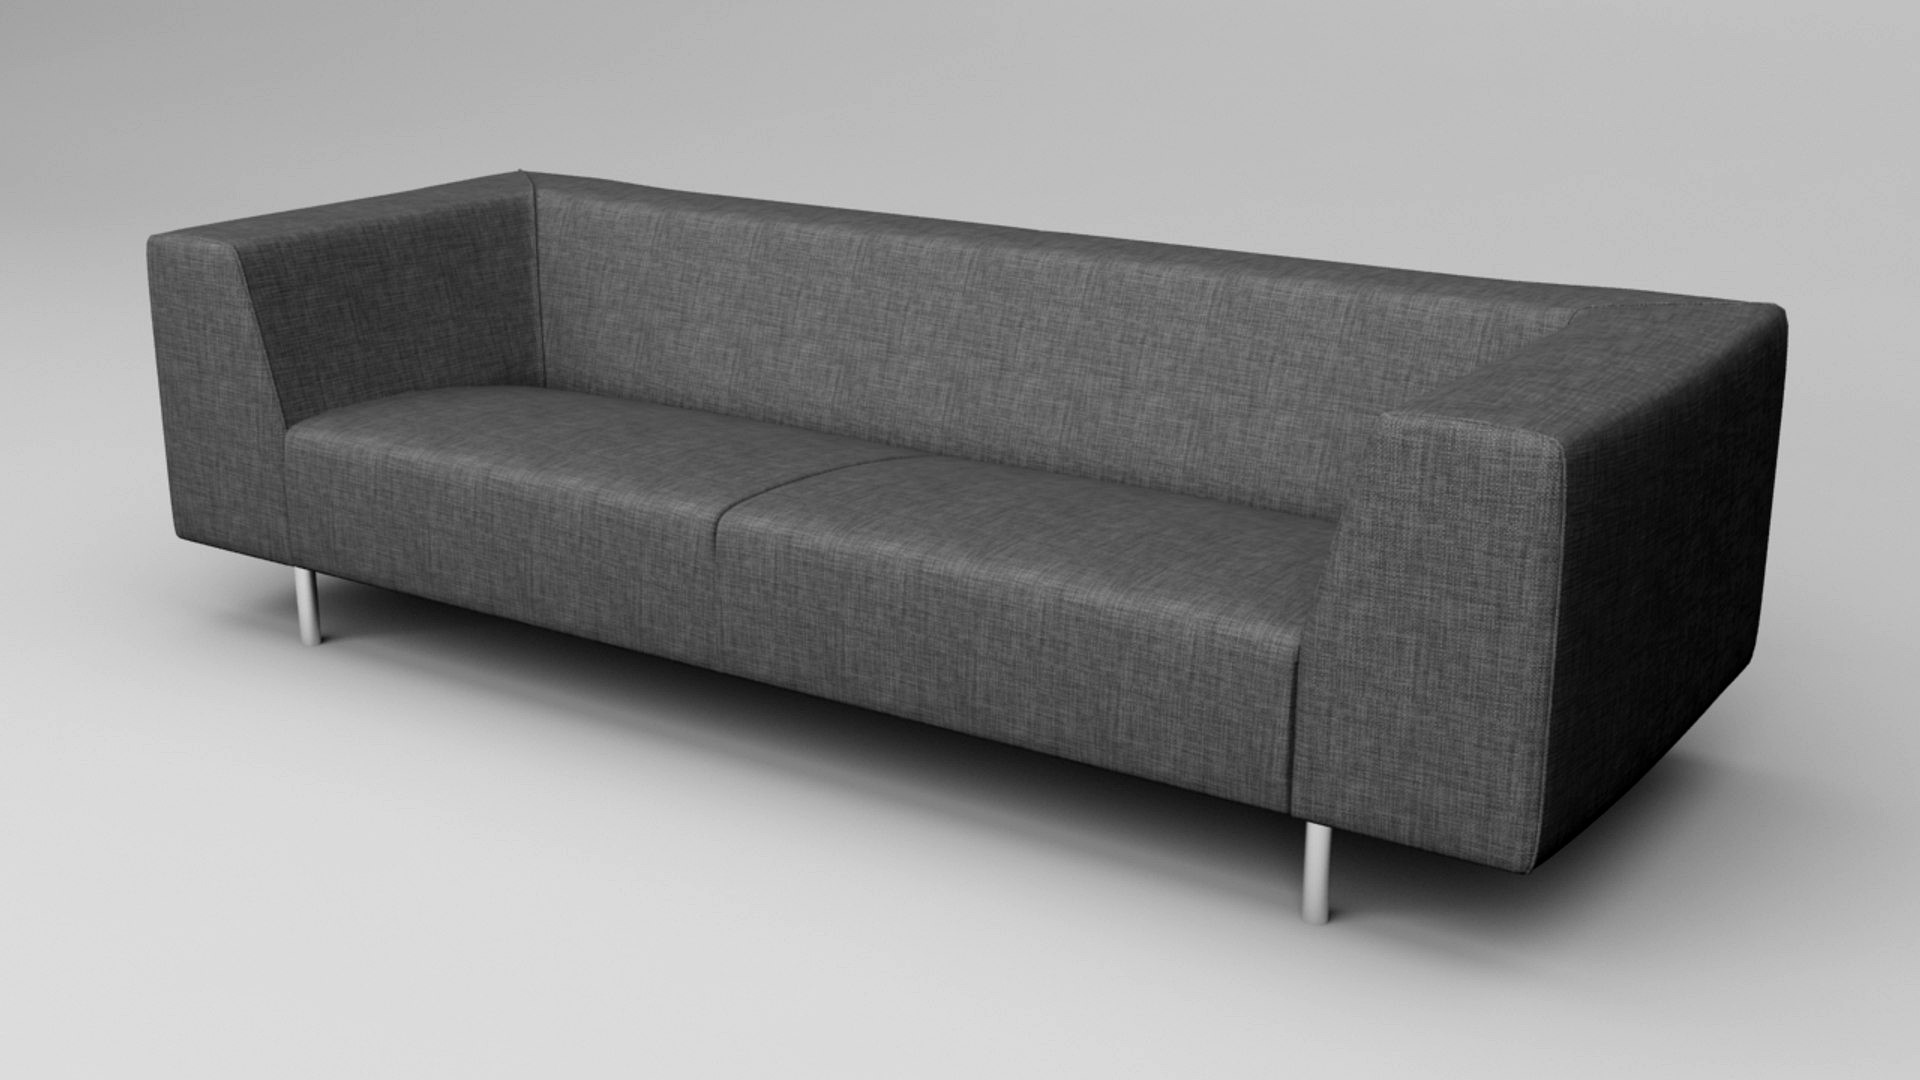 European Modern Couch - Less